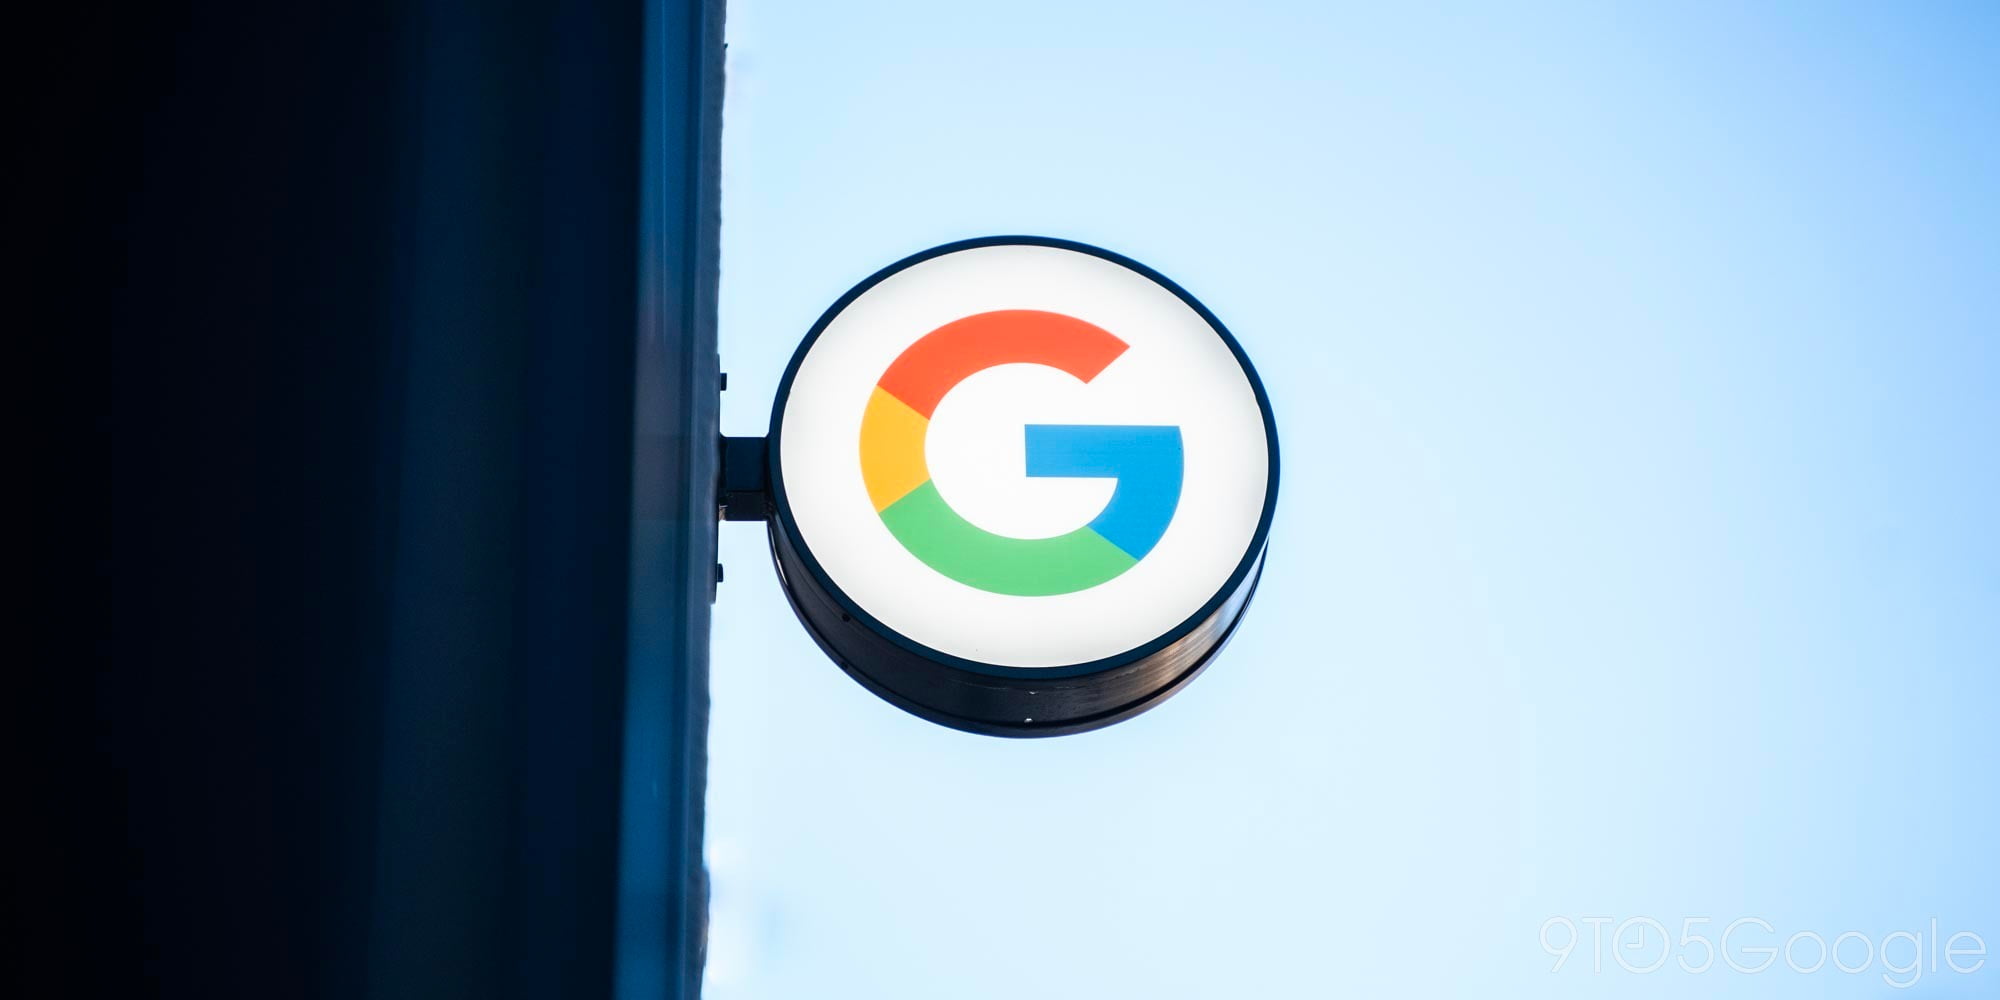 Google Pixel 3 wallpapers